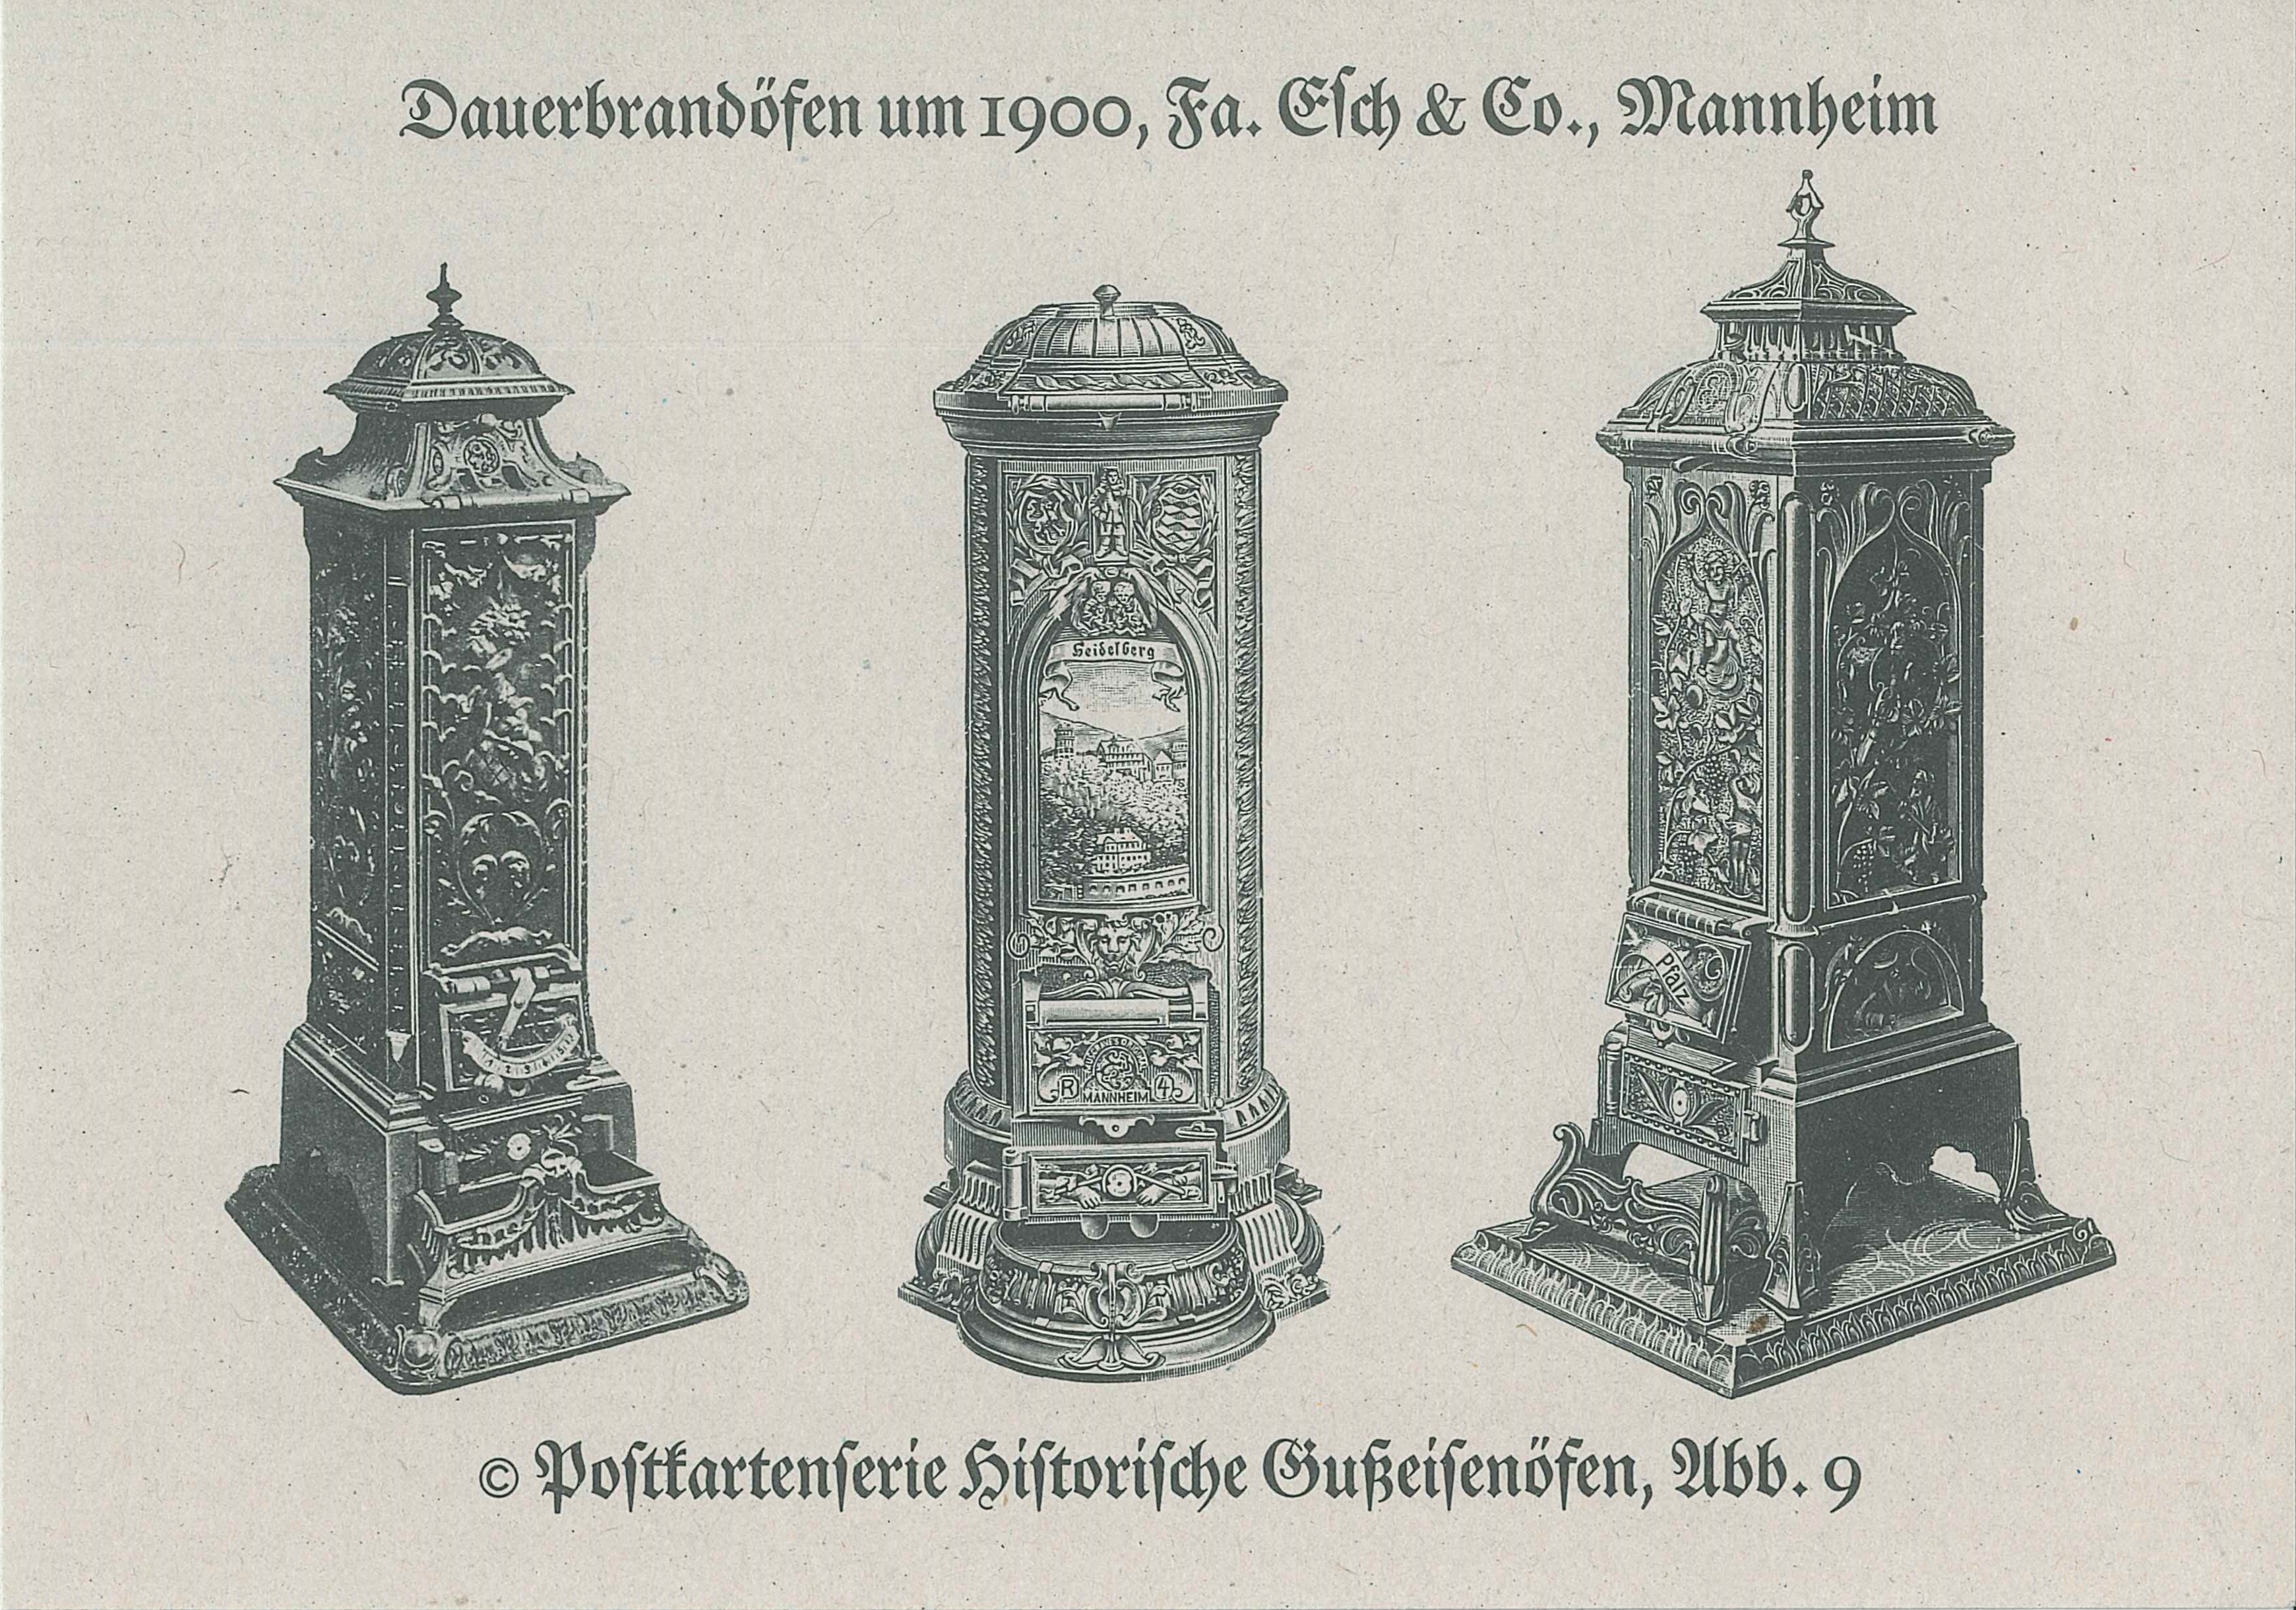 Postkartenserie "Historische Gußeisenöfen, Abb. 9", Deutsches Eisenofenmuseum, Neu-Ulm (REM CC BY-NC-SA)